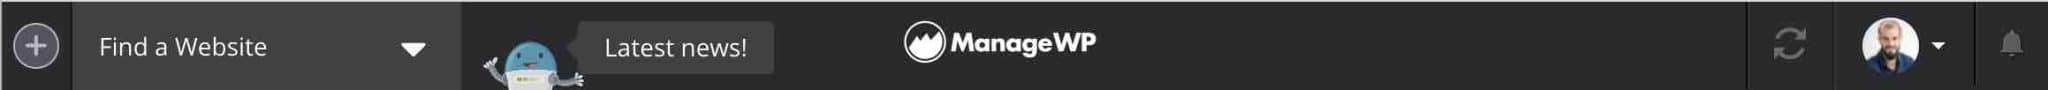 La barre de navigation du haut de page de ManageWP.